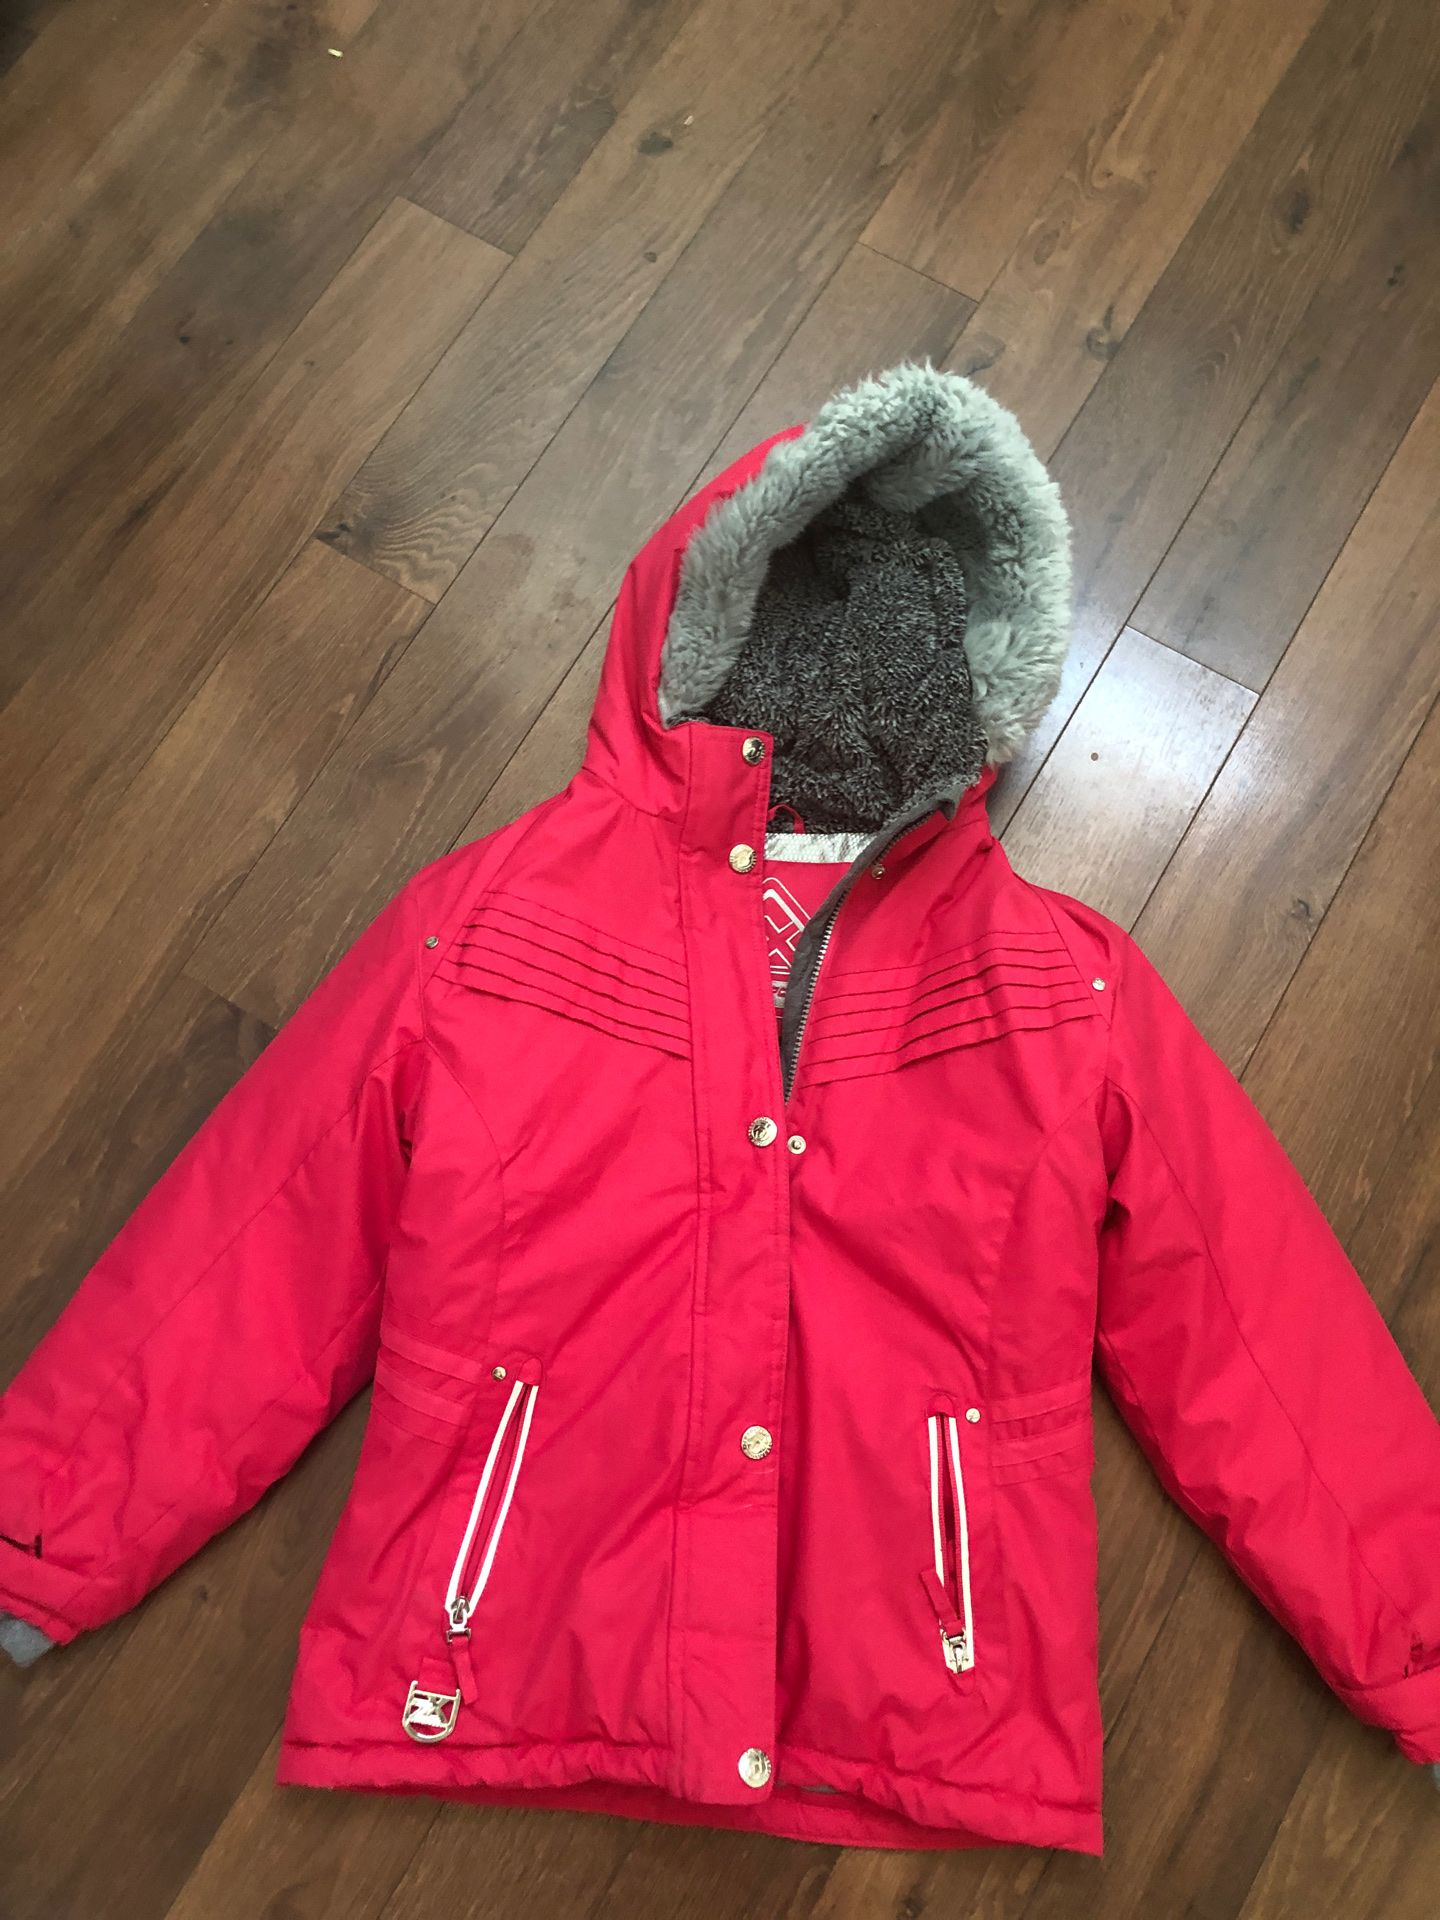 Girls ski jacket / winter coat - like new - size 10/12